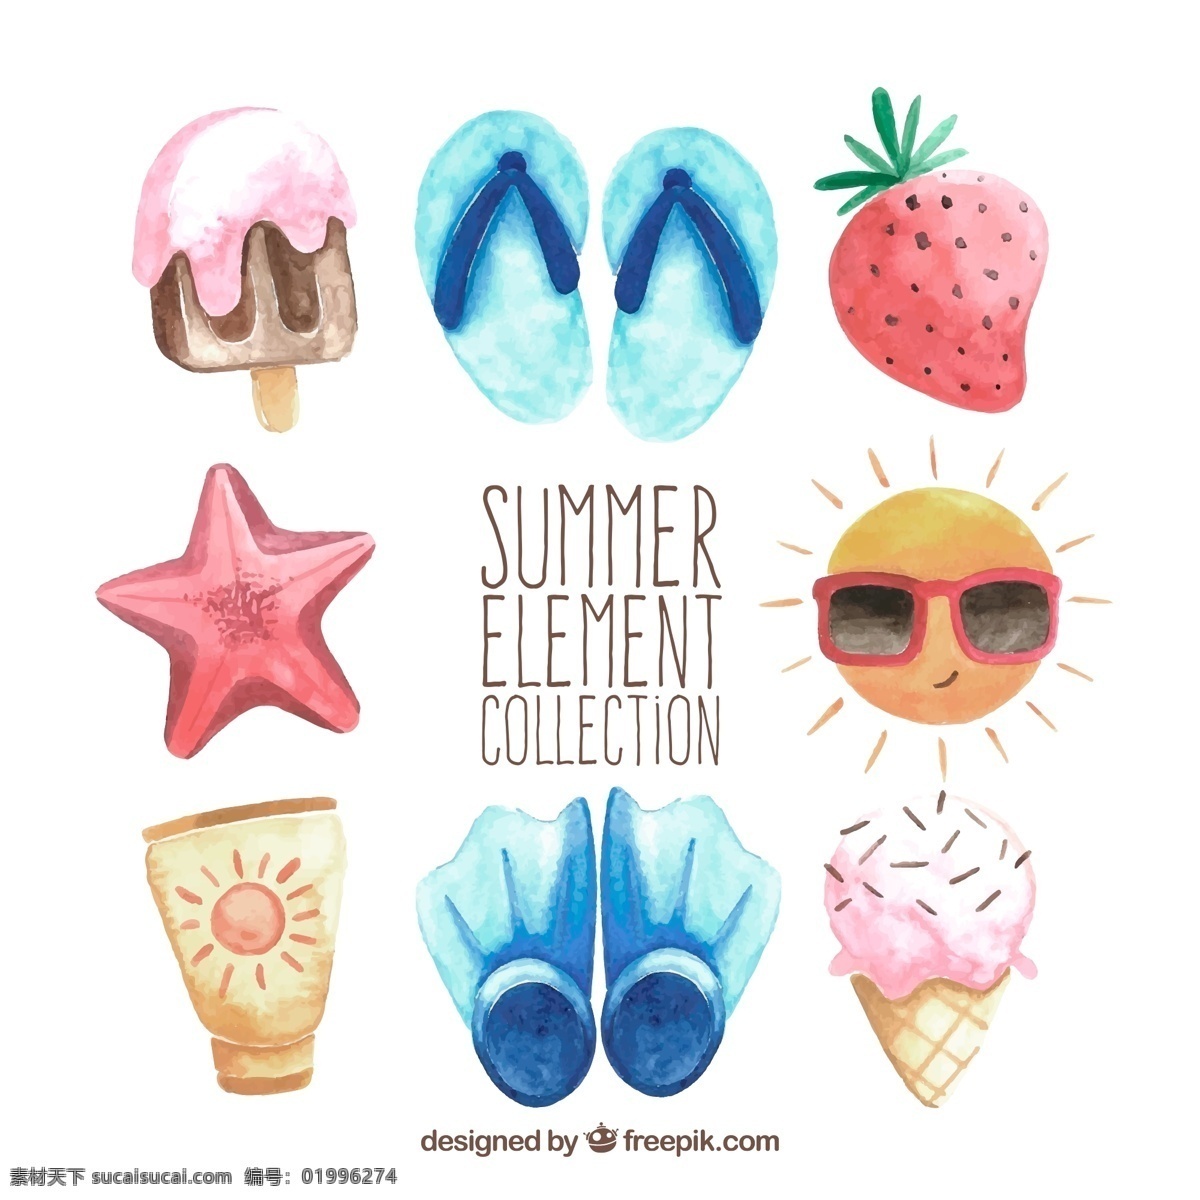 款 彩绘 夏季 度假 元素 冰淇淋 太阳 雪糕 草莓 脚蹼 沙滩 拖鞋 防晒霜 海星 标志图标 公共标识标志